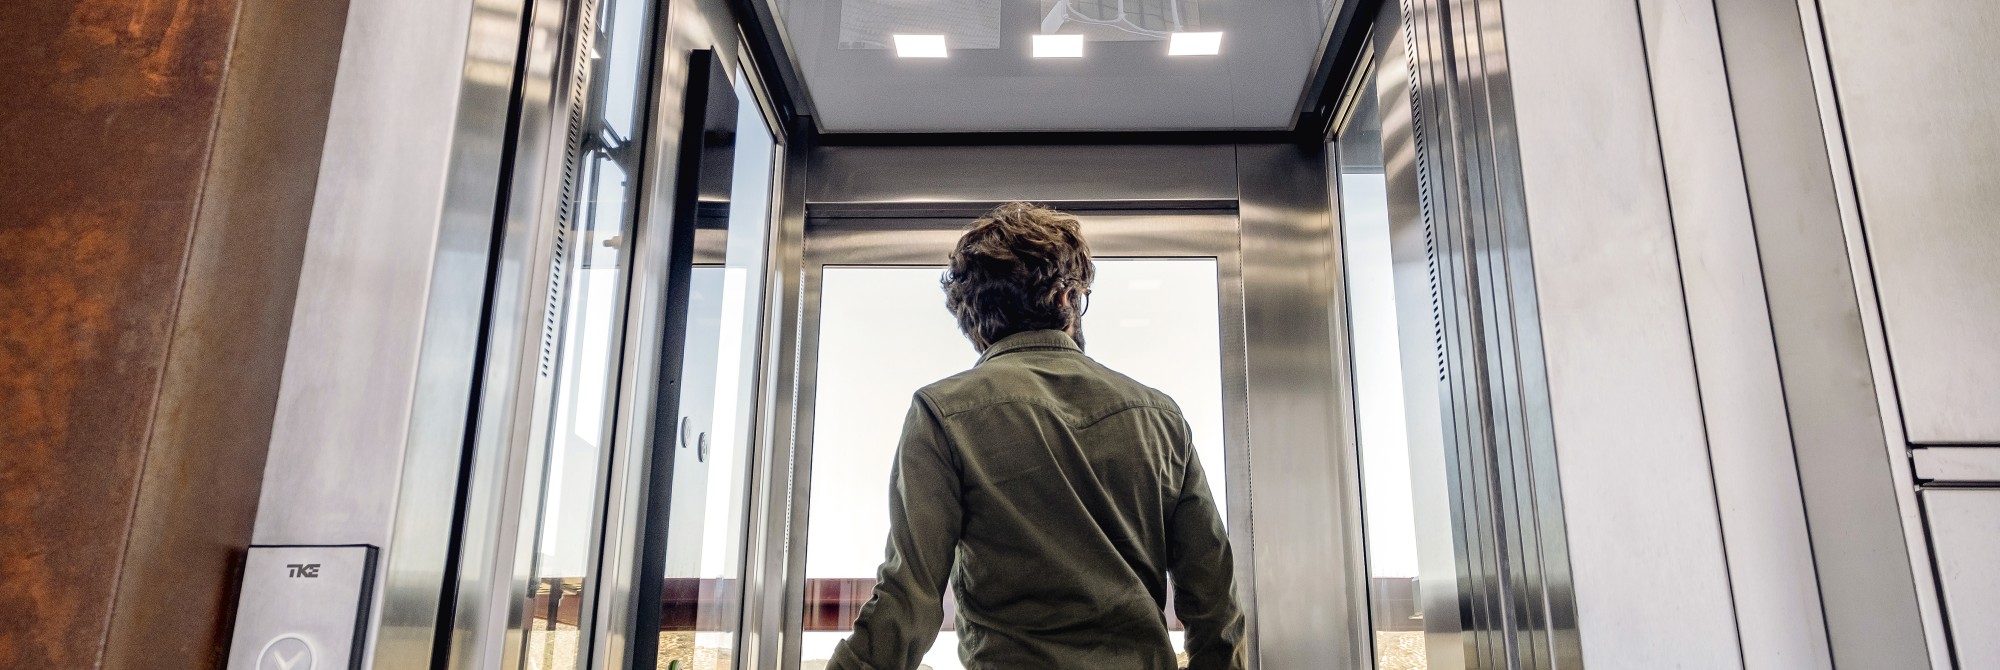 A passenger exiting a passenger elevator